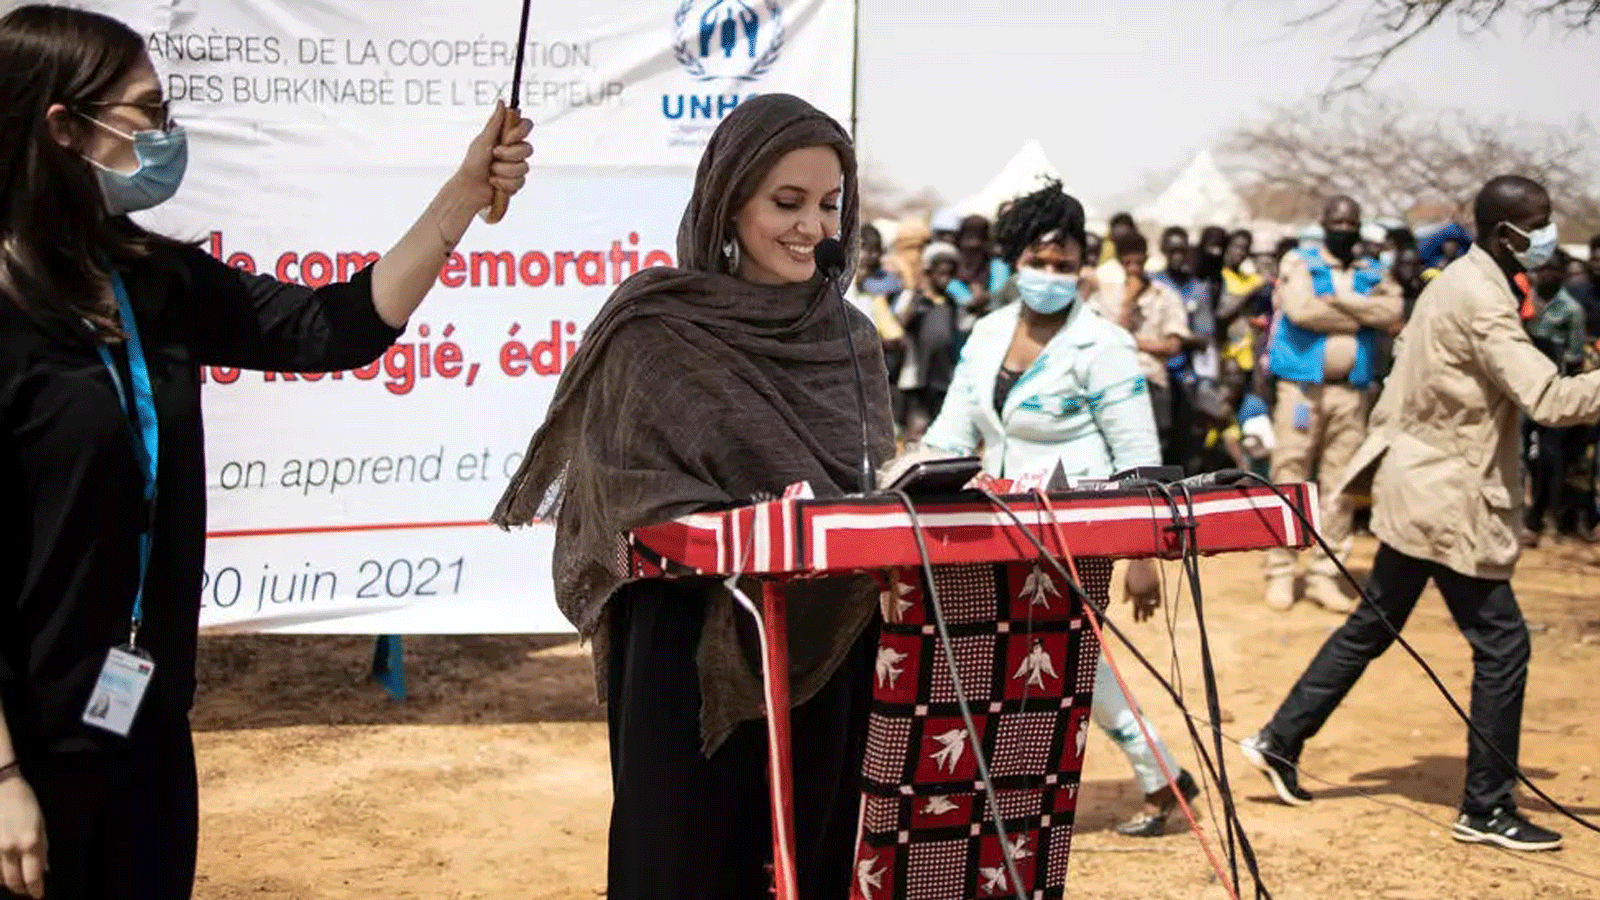 النجمة أنجلينا جولي، المبعوثة الخاصة لمفوضية الأمم المتحدة لشؤون اللاجئين، تُدلي بتصريح في مخيم غوديبو، في اليوم العالمي للاجئين بتاريخ 20 حزيران/ يونيو 2021.